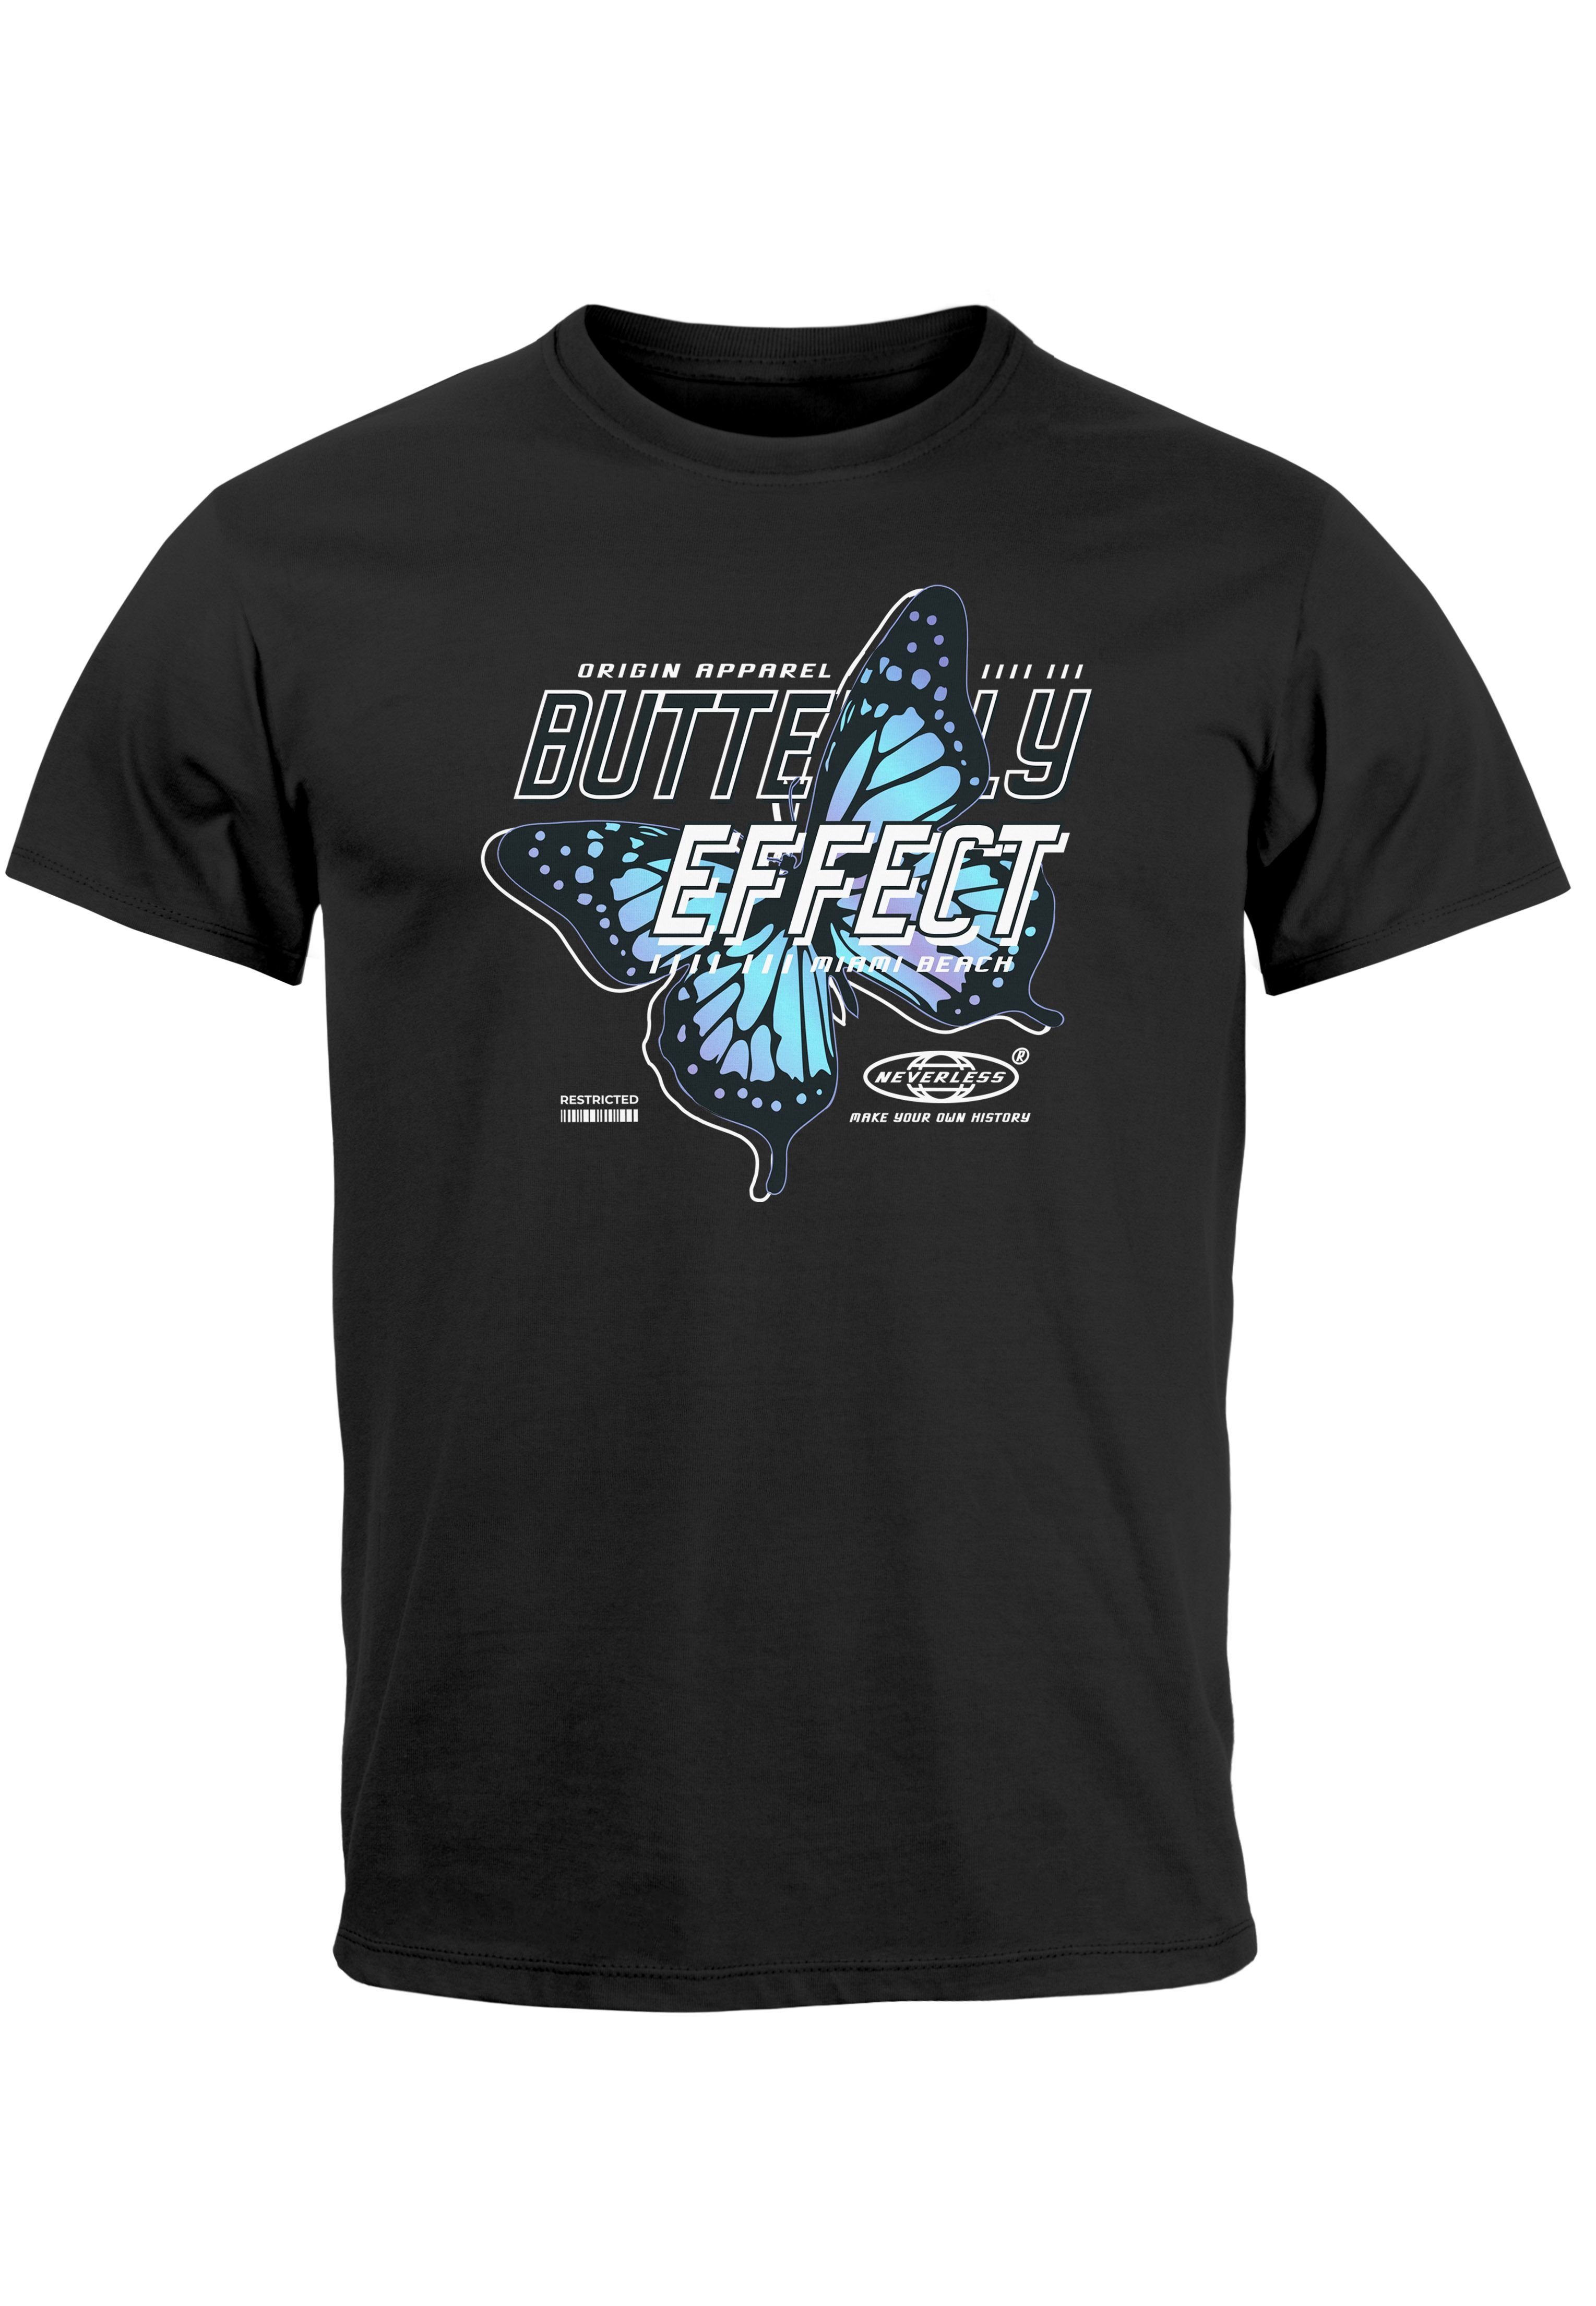 T-Shirt Effect Schriftzug Print-Shirt Bedruckt Schmetterling schwarz Herren Butterfly Fash mit Neverless Print